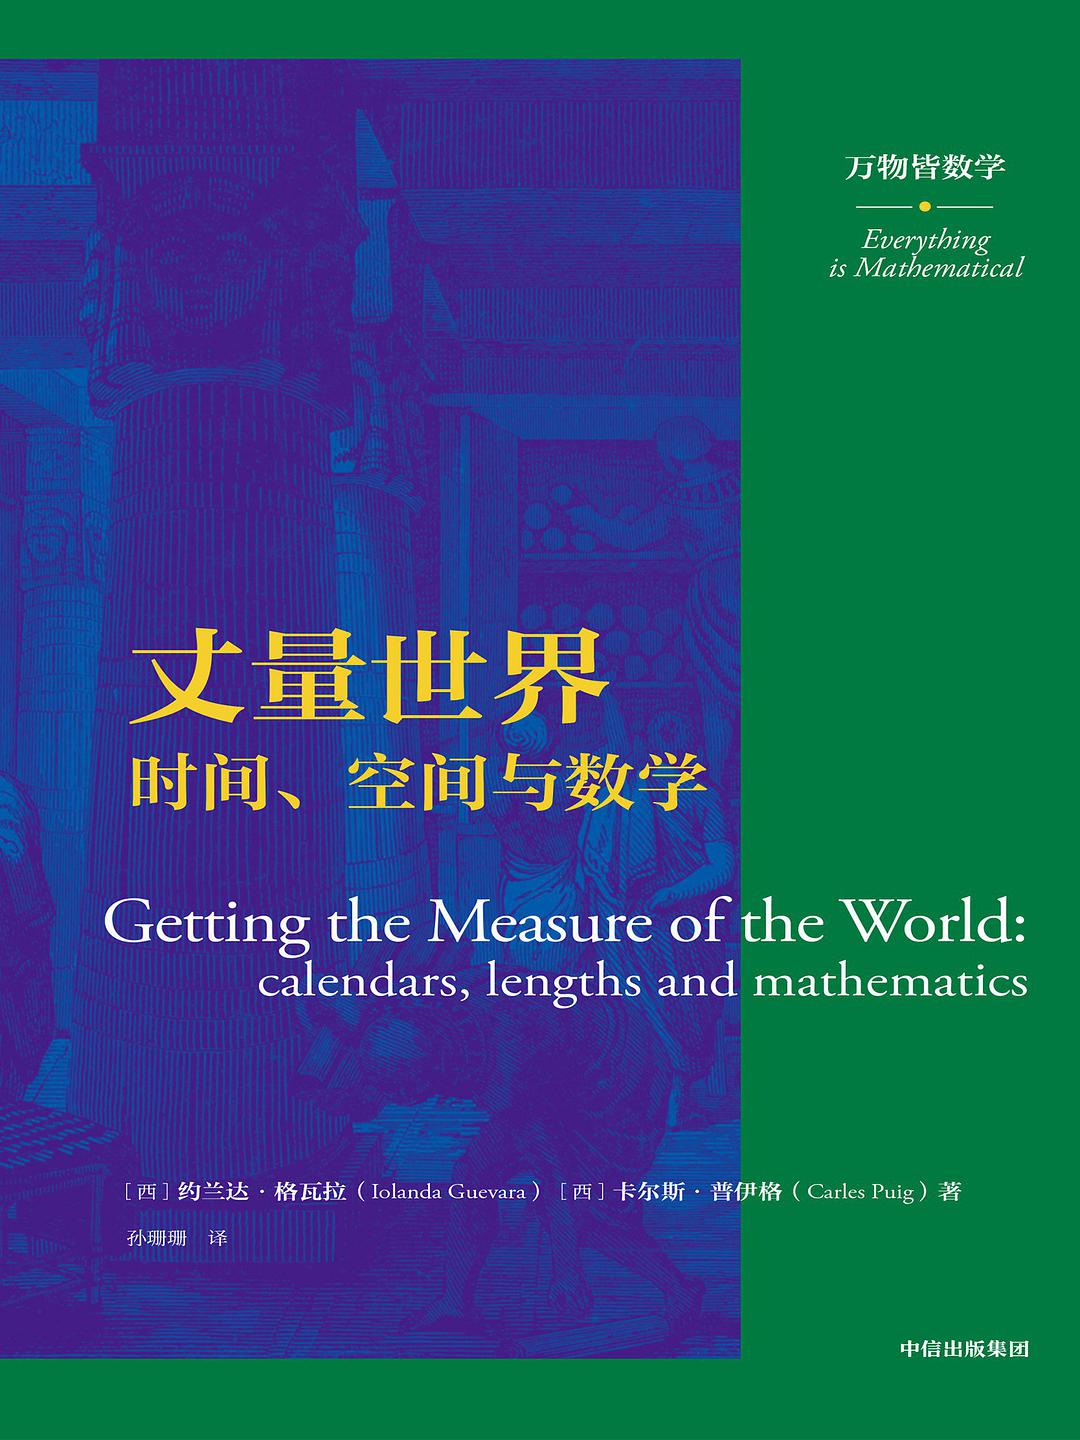 丈量世界 时间、空间与数学 calendars, lengths and mathematics